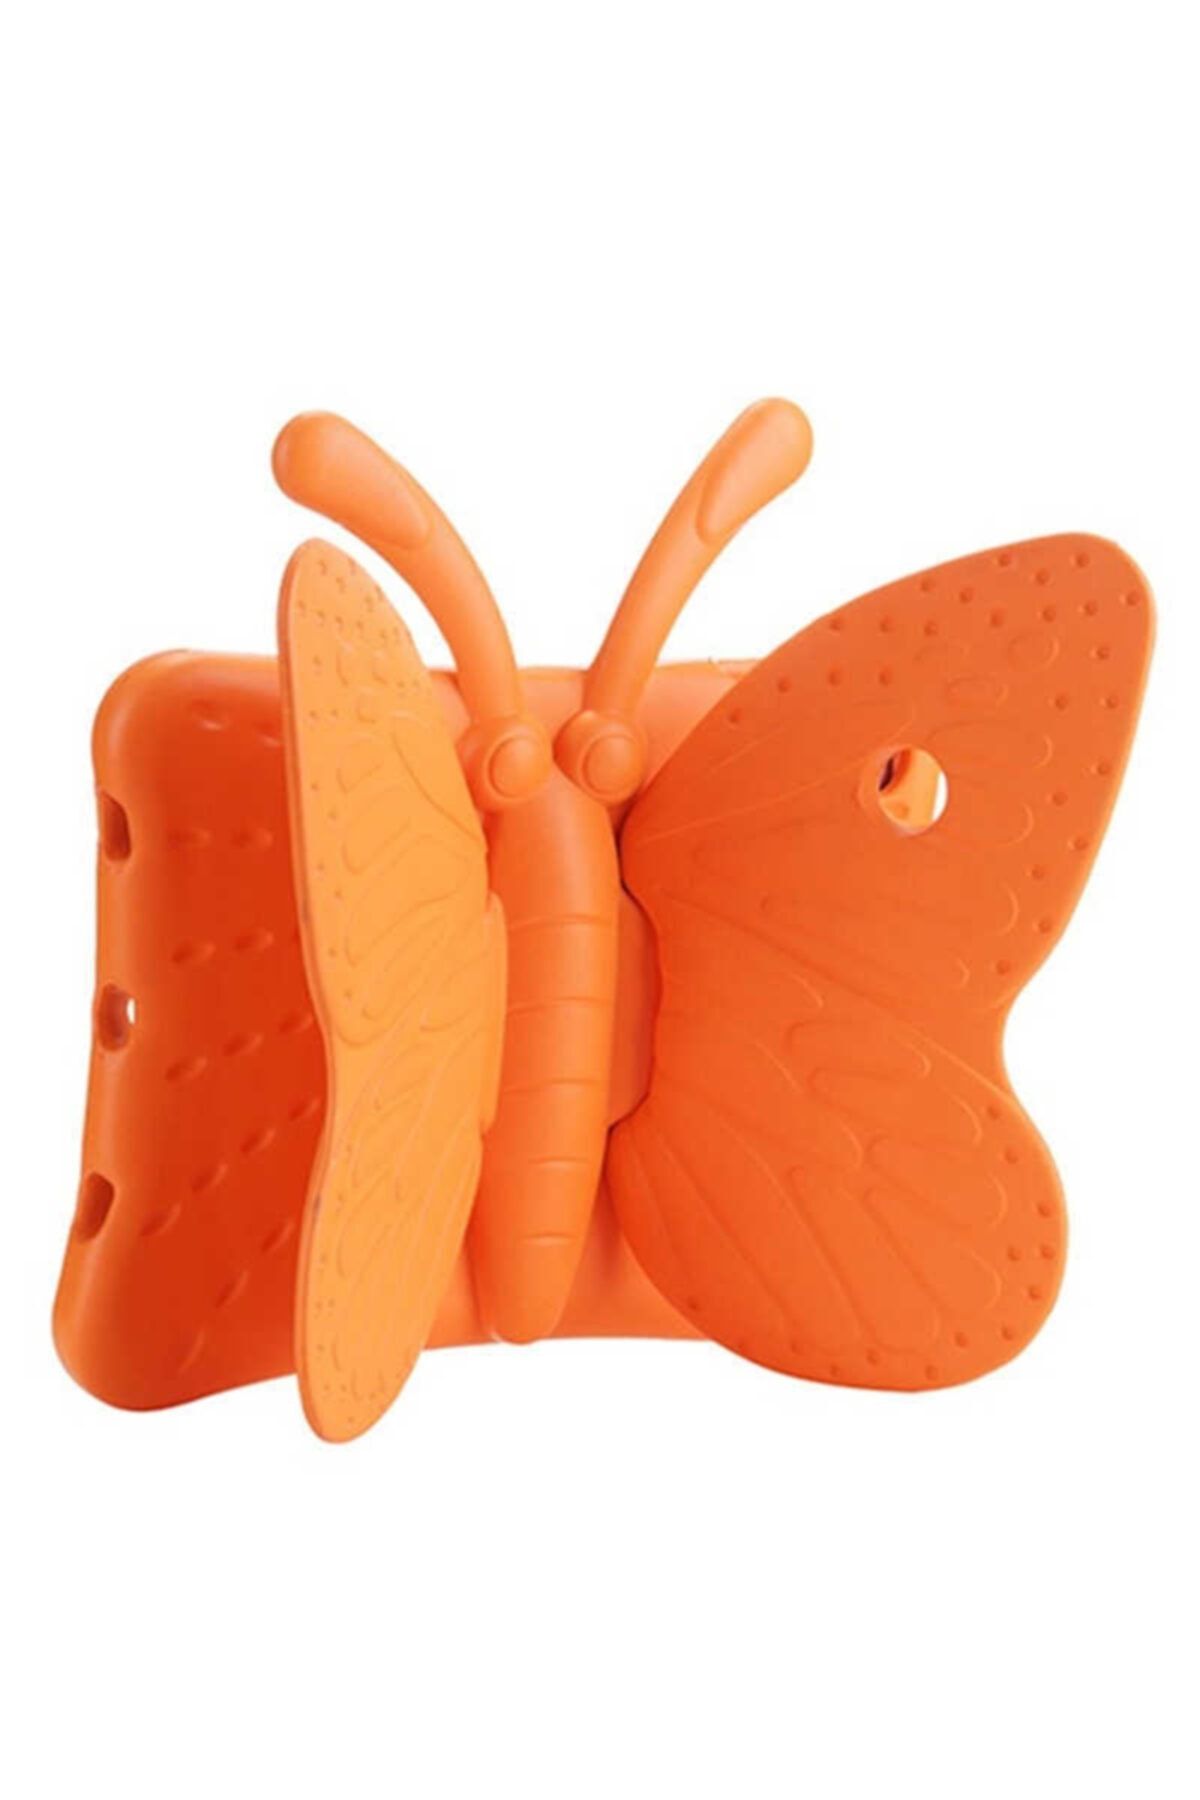 CEPCASE Ipad Mini 2 3 Tablet Kılıfı Butterfly Kelebekli Çocuklar Için Standlı Silikon Kılıf